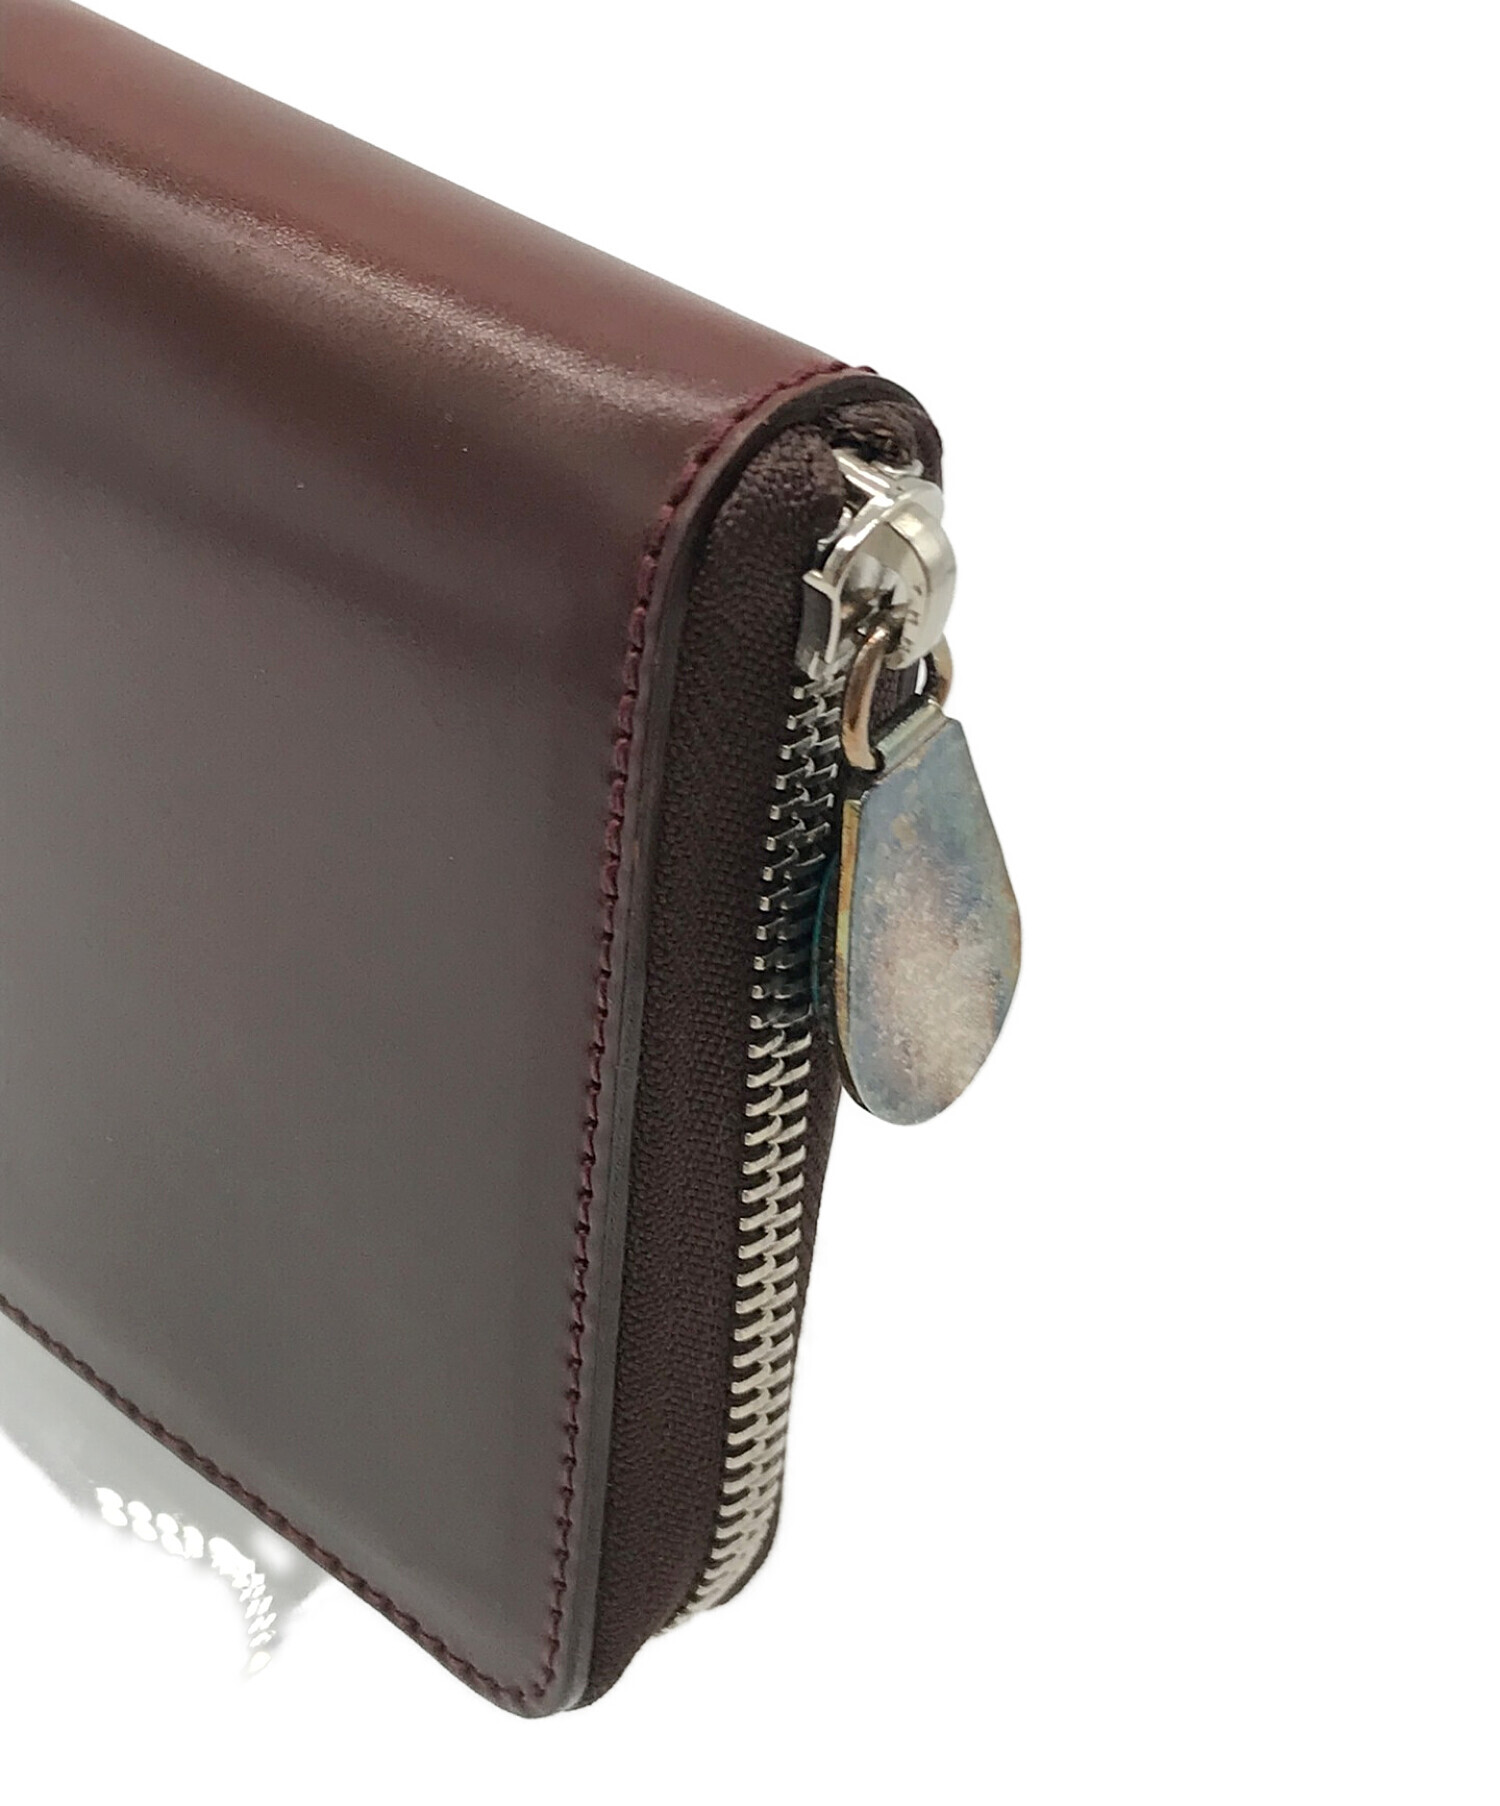 7SENSE (セブンセンス) シェルコードバン　ラウンドジップ二つ折り財布 ダークブラウン サイズ:実寸サイズにてご確認ください。